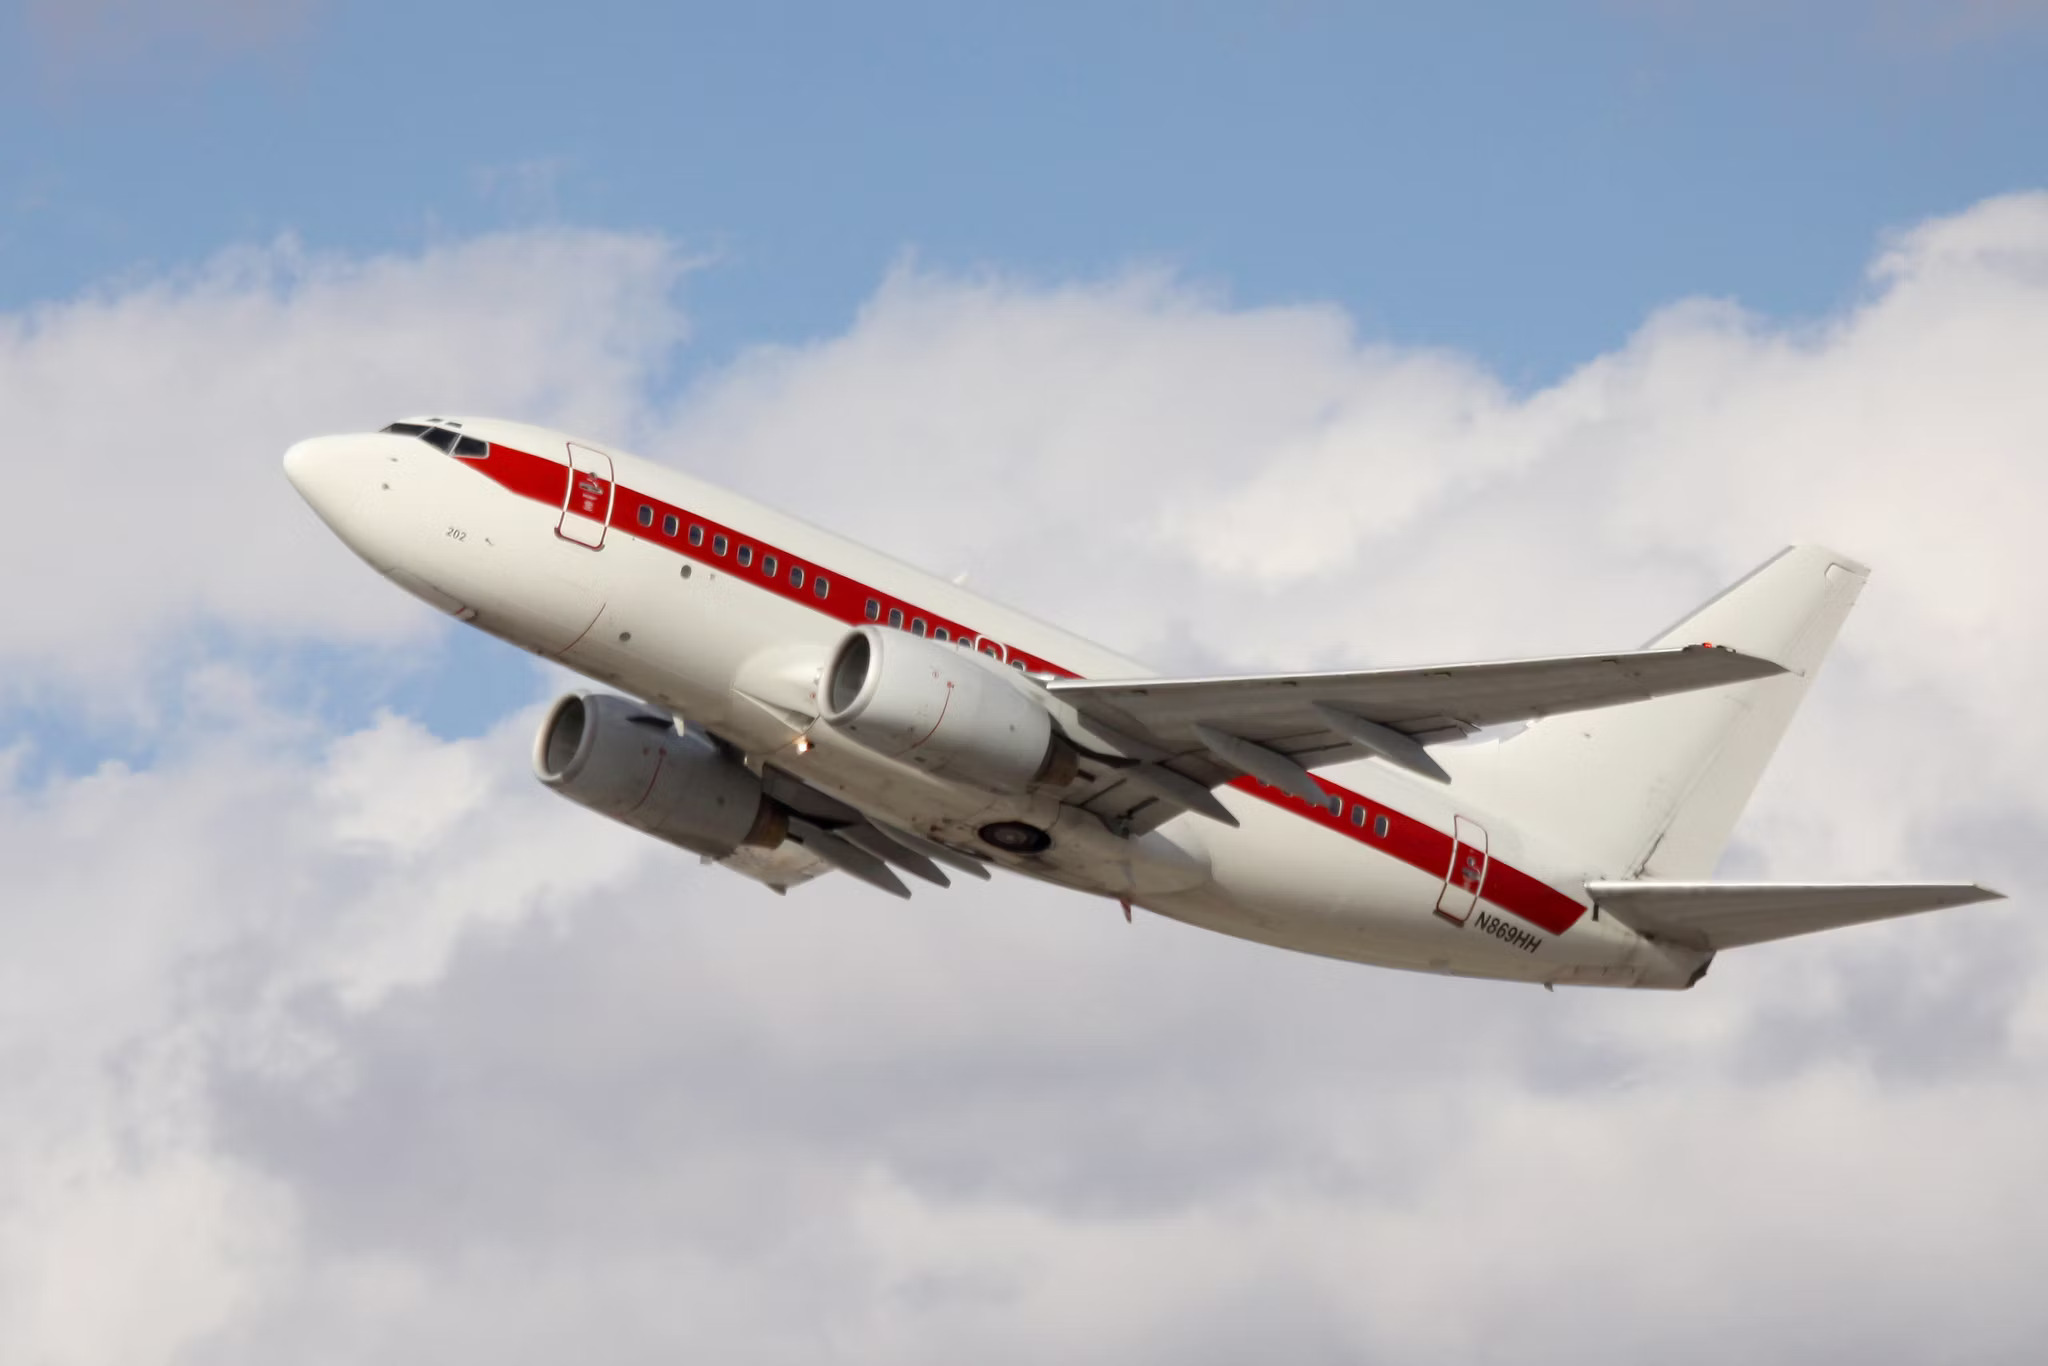 Letadla směřující z Las Vegas do vojenských oblastí šlo poznat podle ikonického červeného pruhu